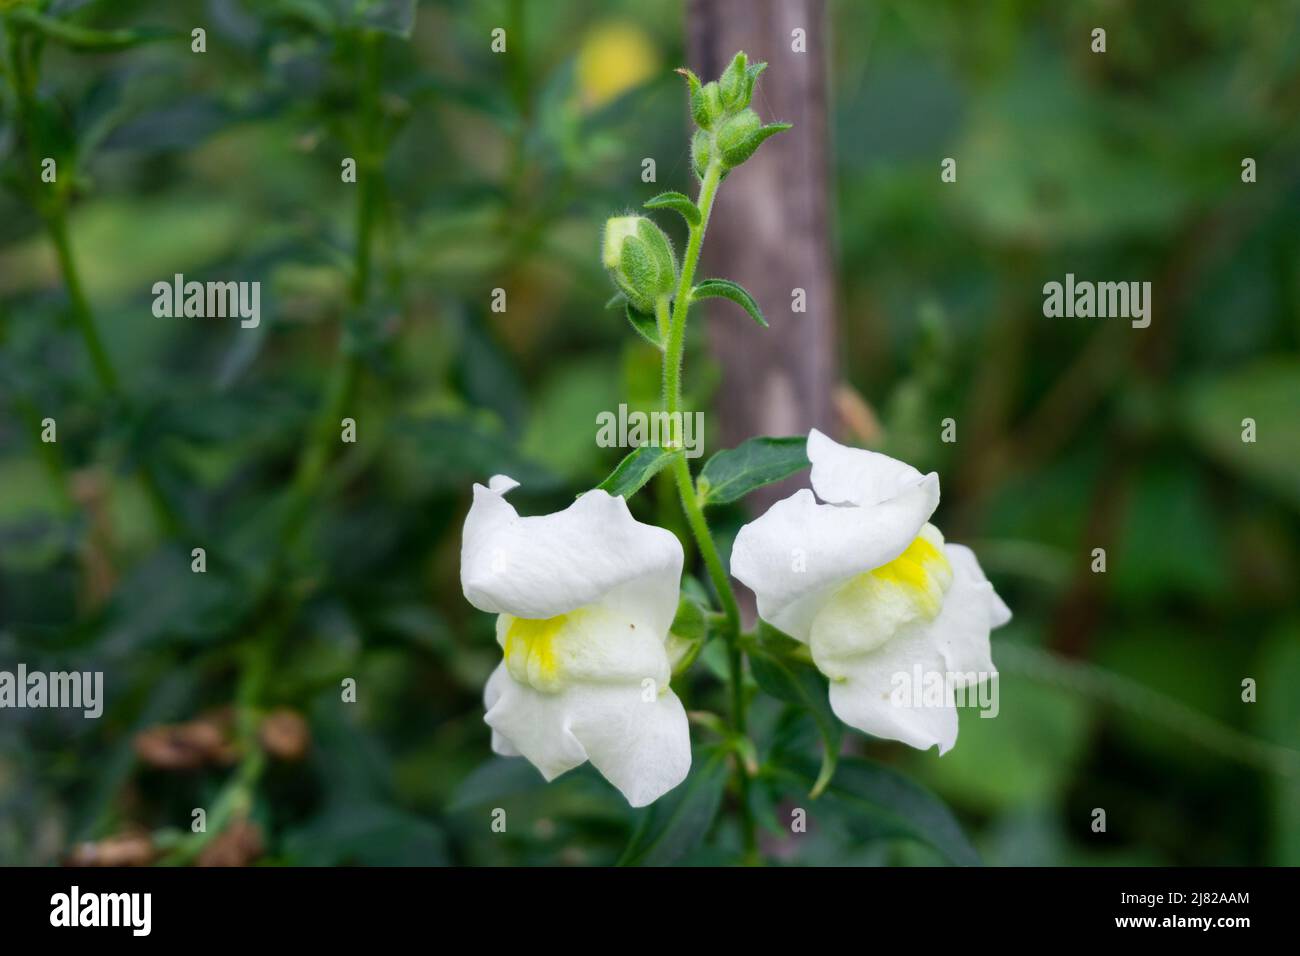 Fiori di Snapdragons bianco in un giardino indiano. Antirrhinum è un genere di piante comunemente note come fiori di drago, dentici e fiori di cane Foto Stock